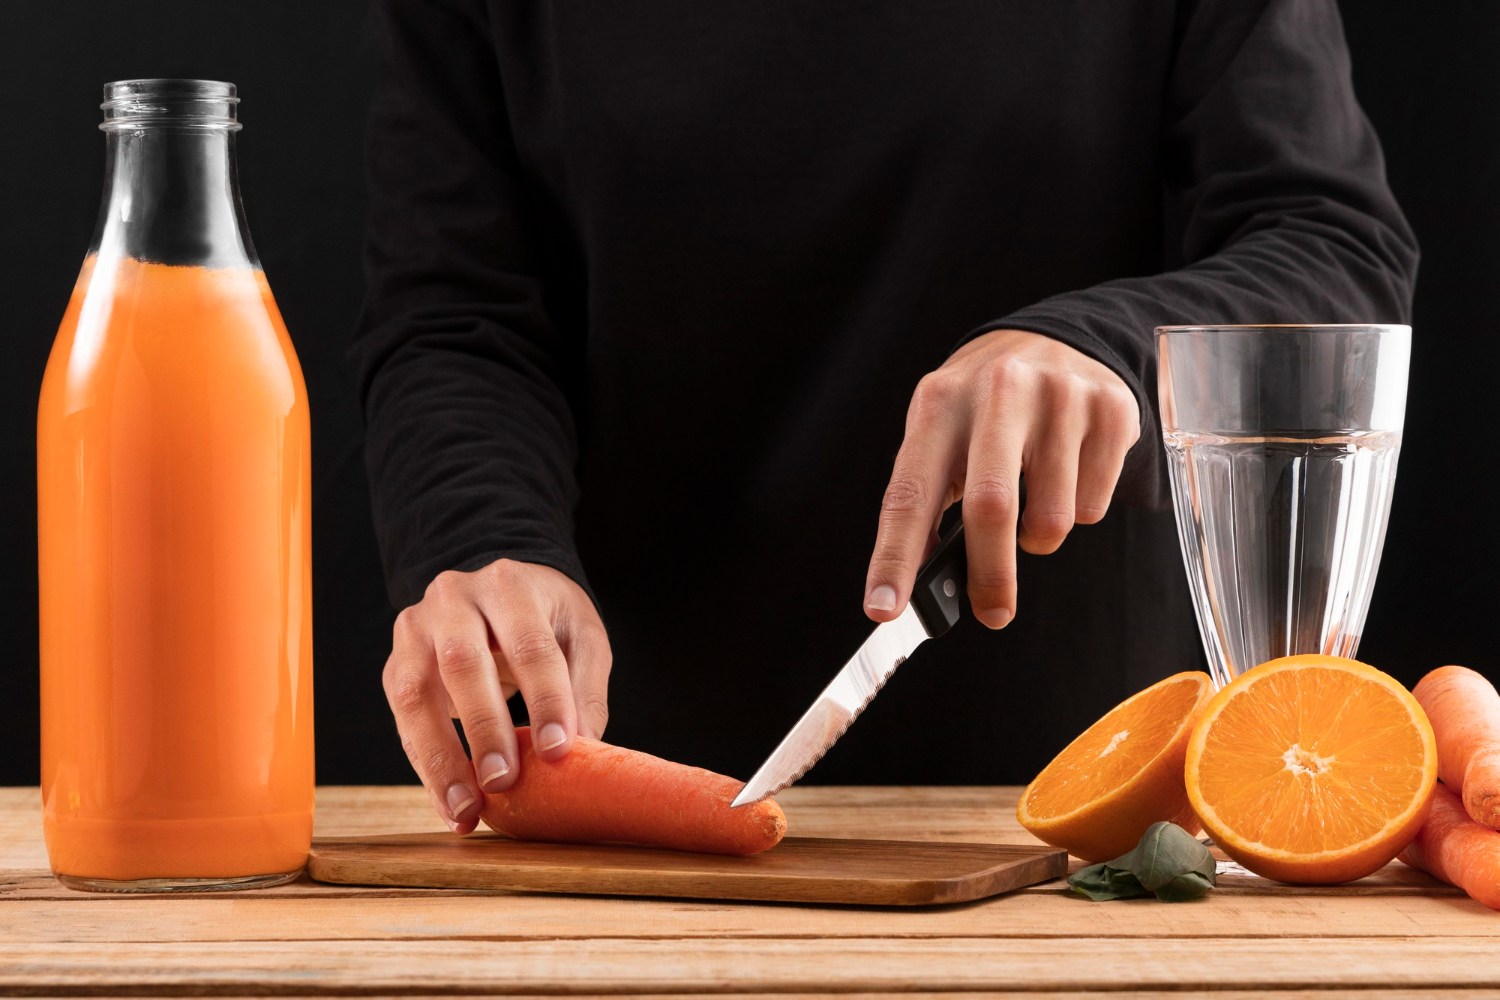 Що буде з вашим здоров'ям, якщо ви почнете пити морквяний сік щодня